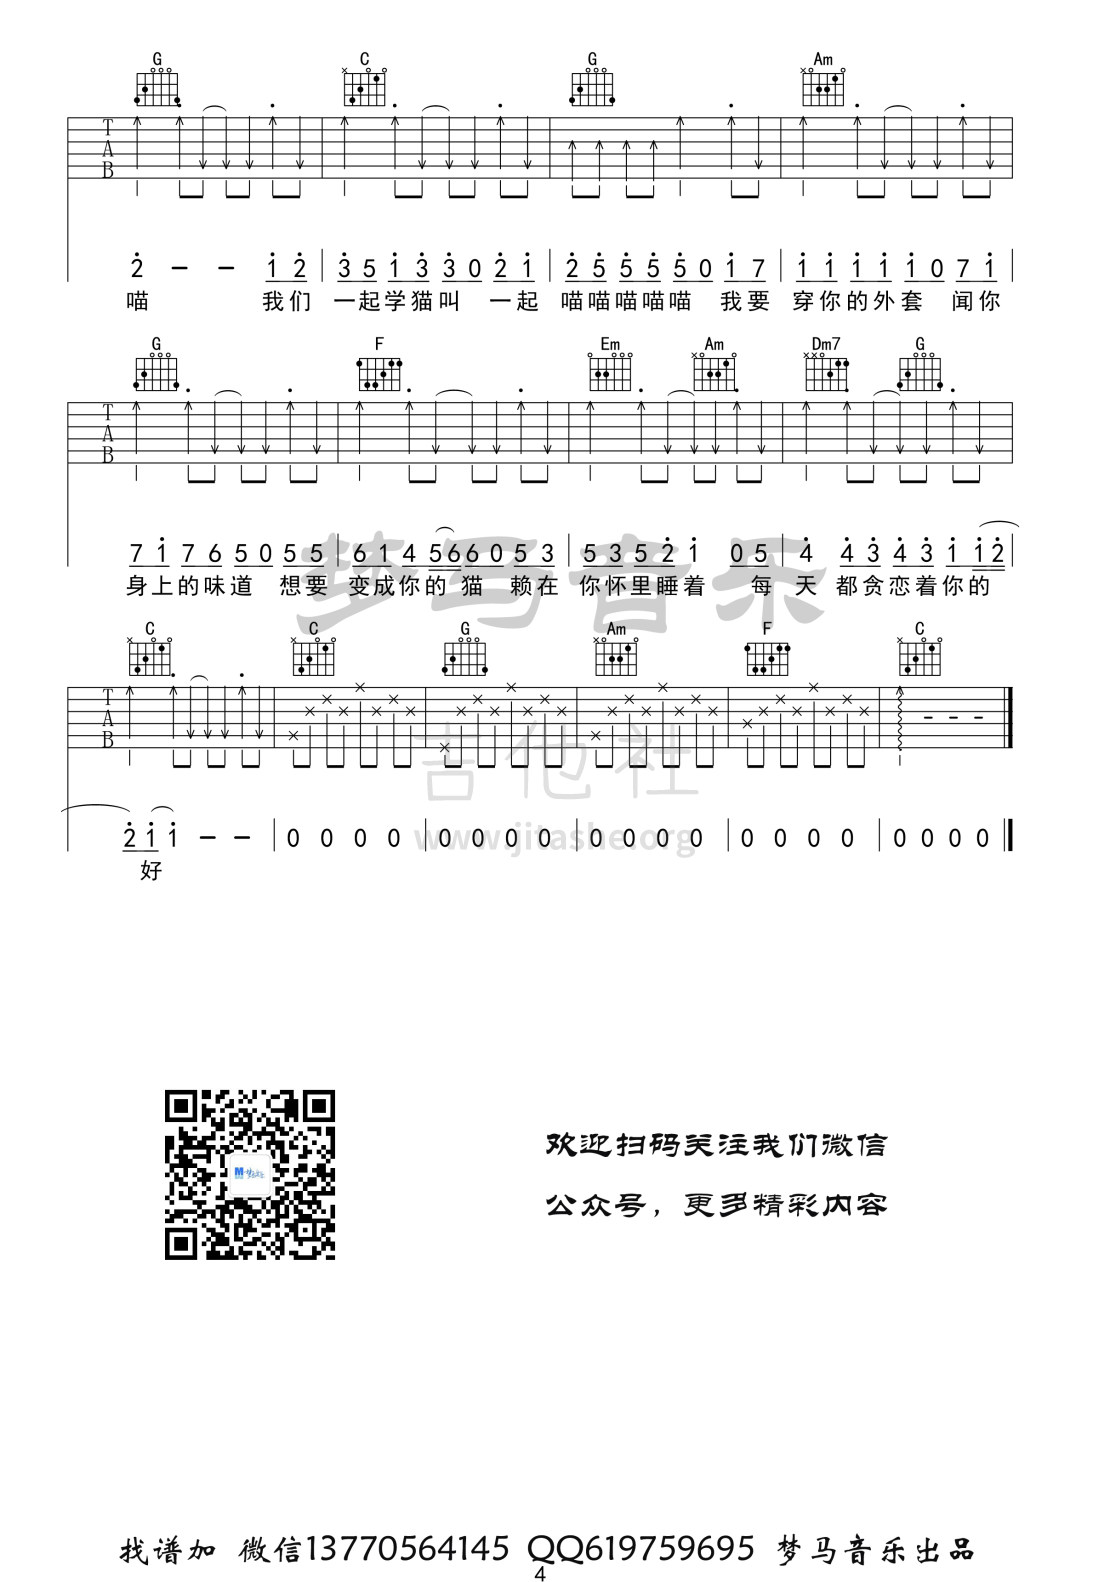 打印:学猫叫吉他谱_陈峰(小峰峰)_学猫叫-4.jpg